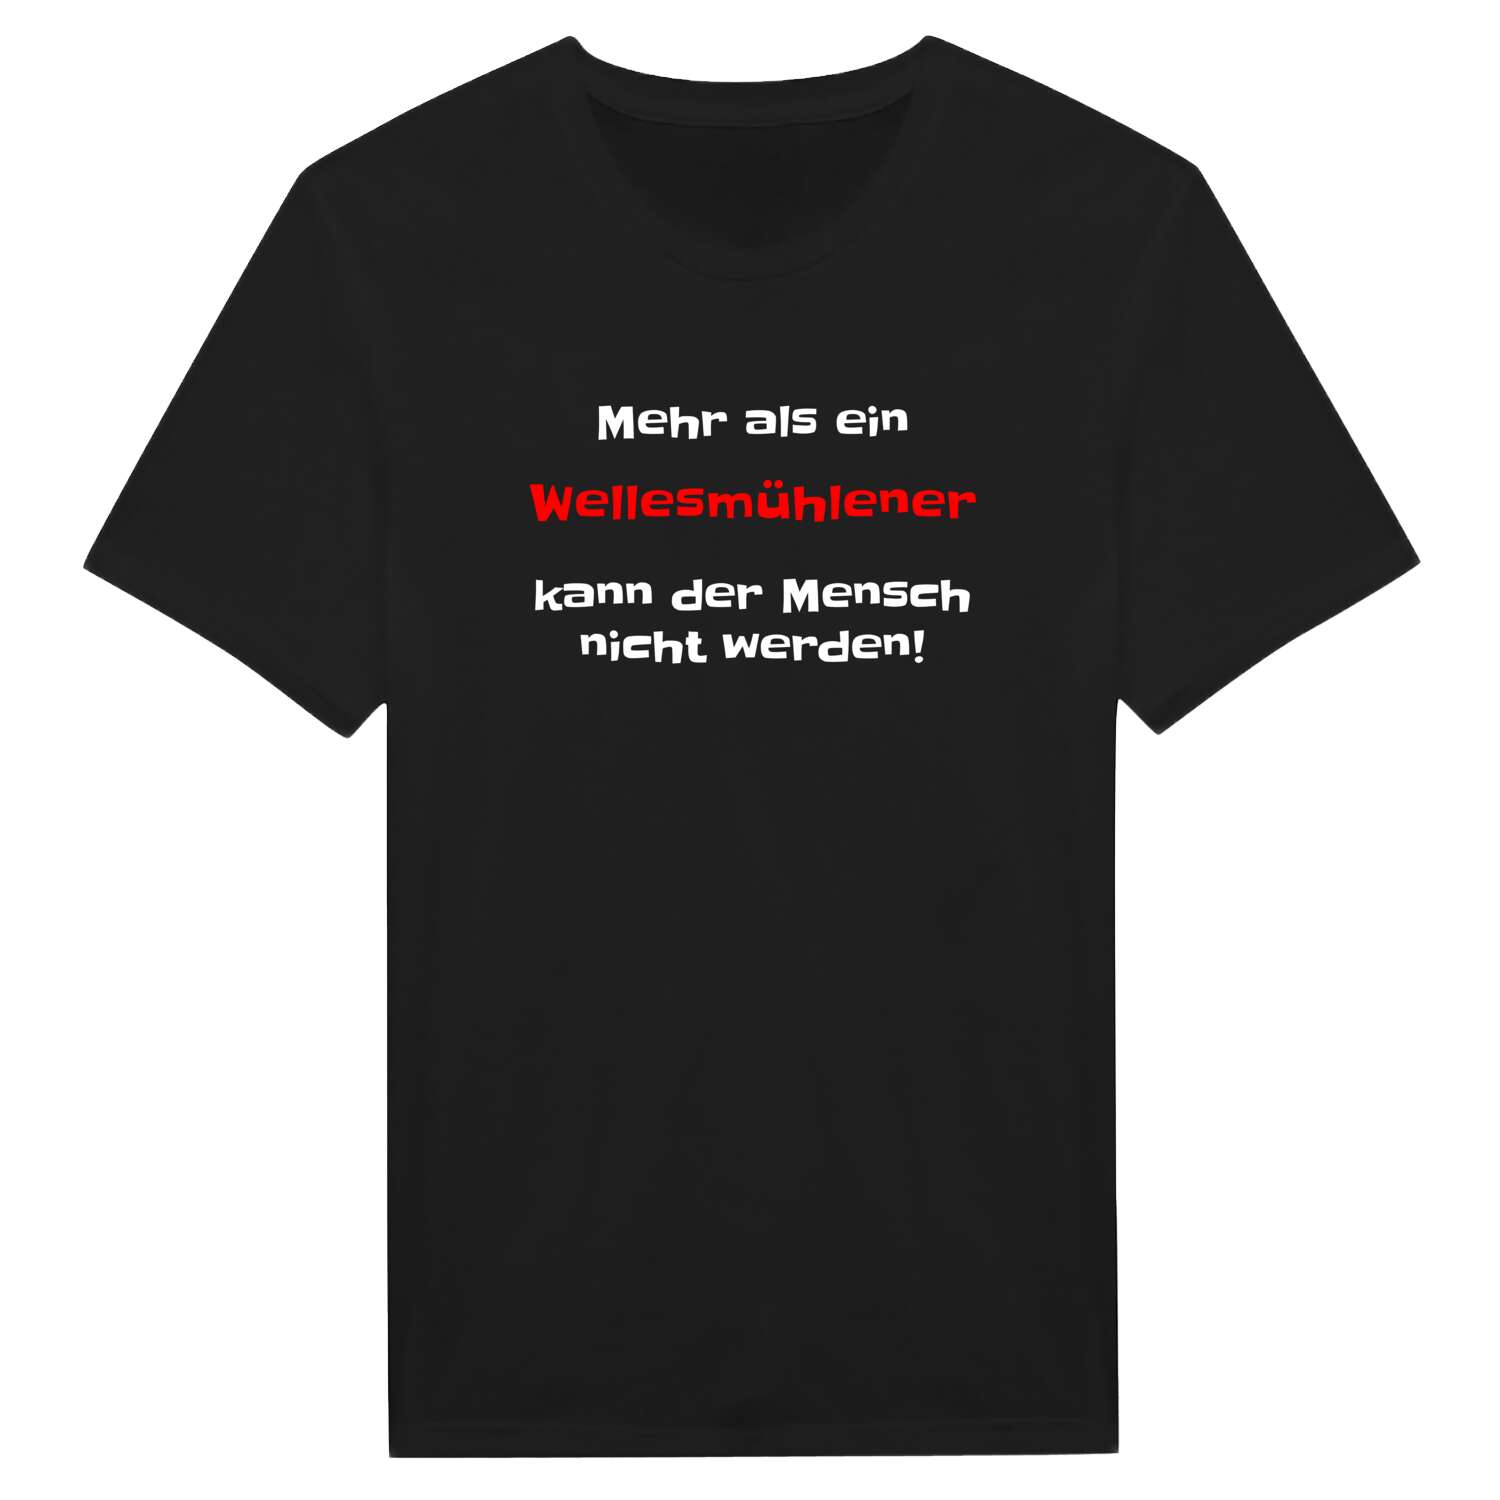 Wellesmühle T-Shirt »Mehr als ein«